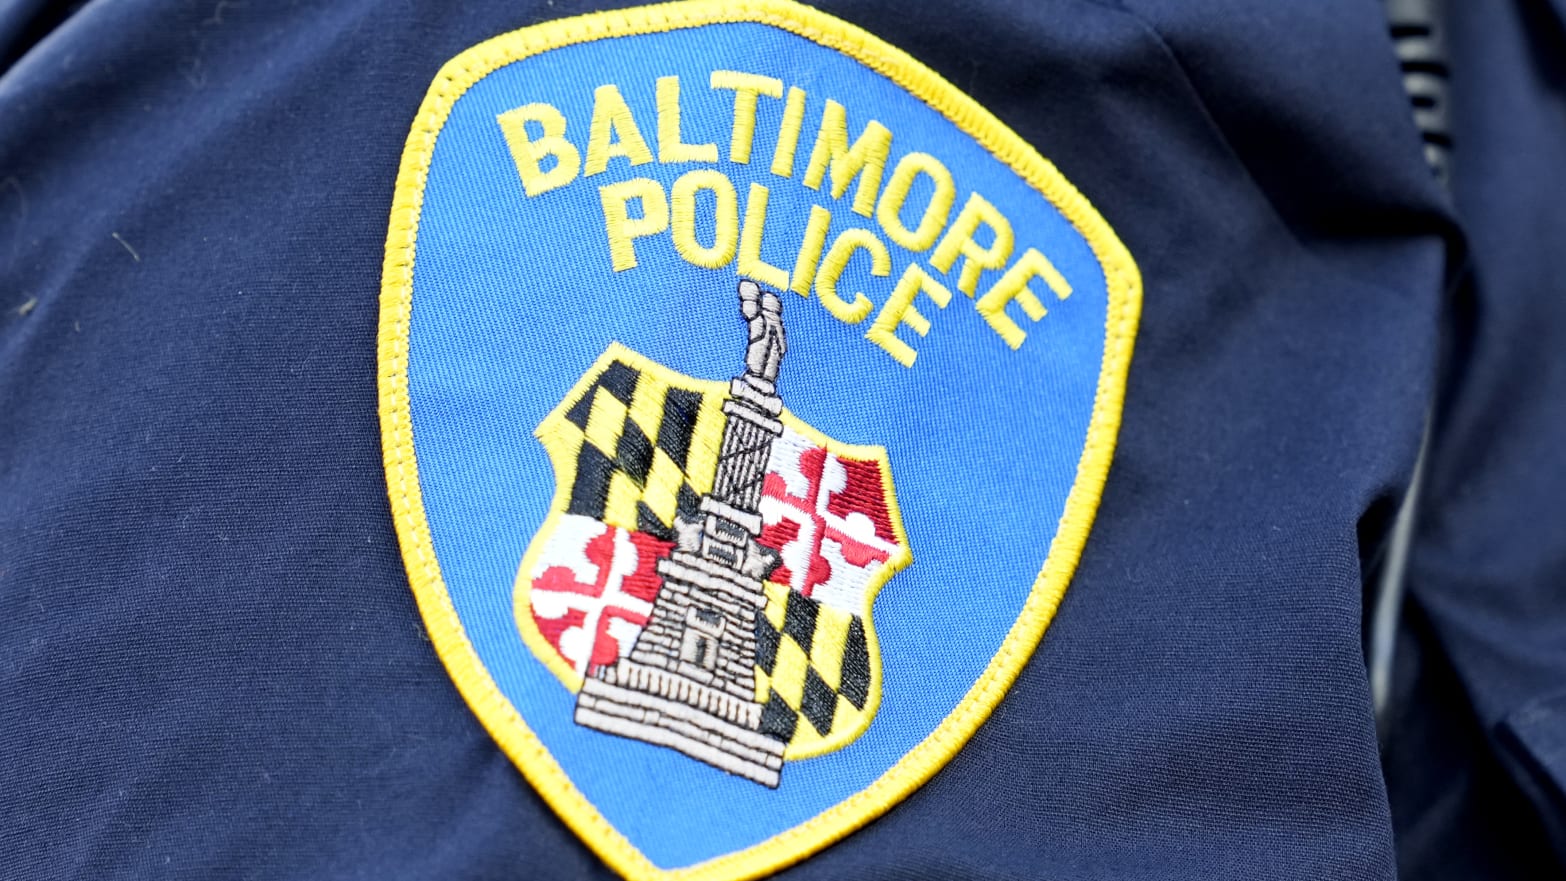 The Baltimore city police logo